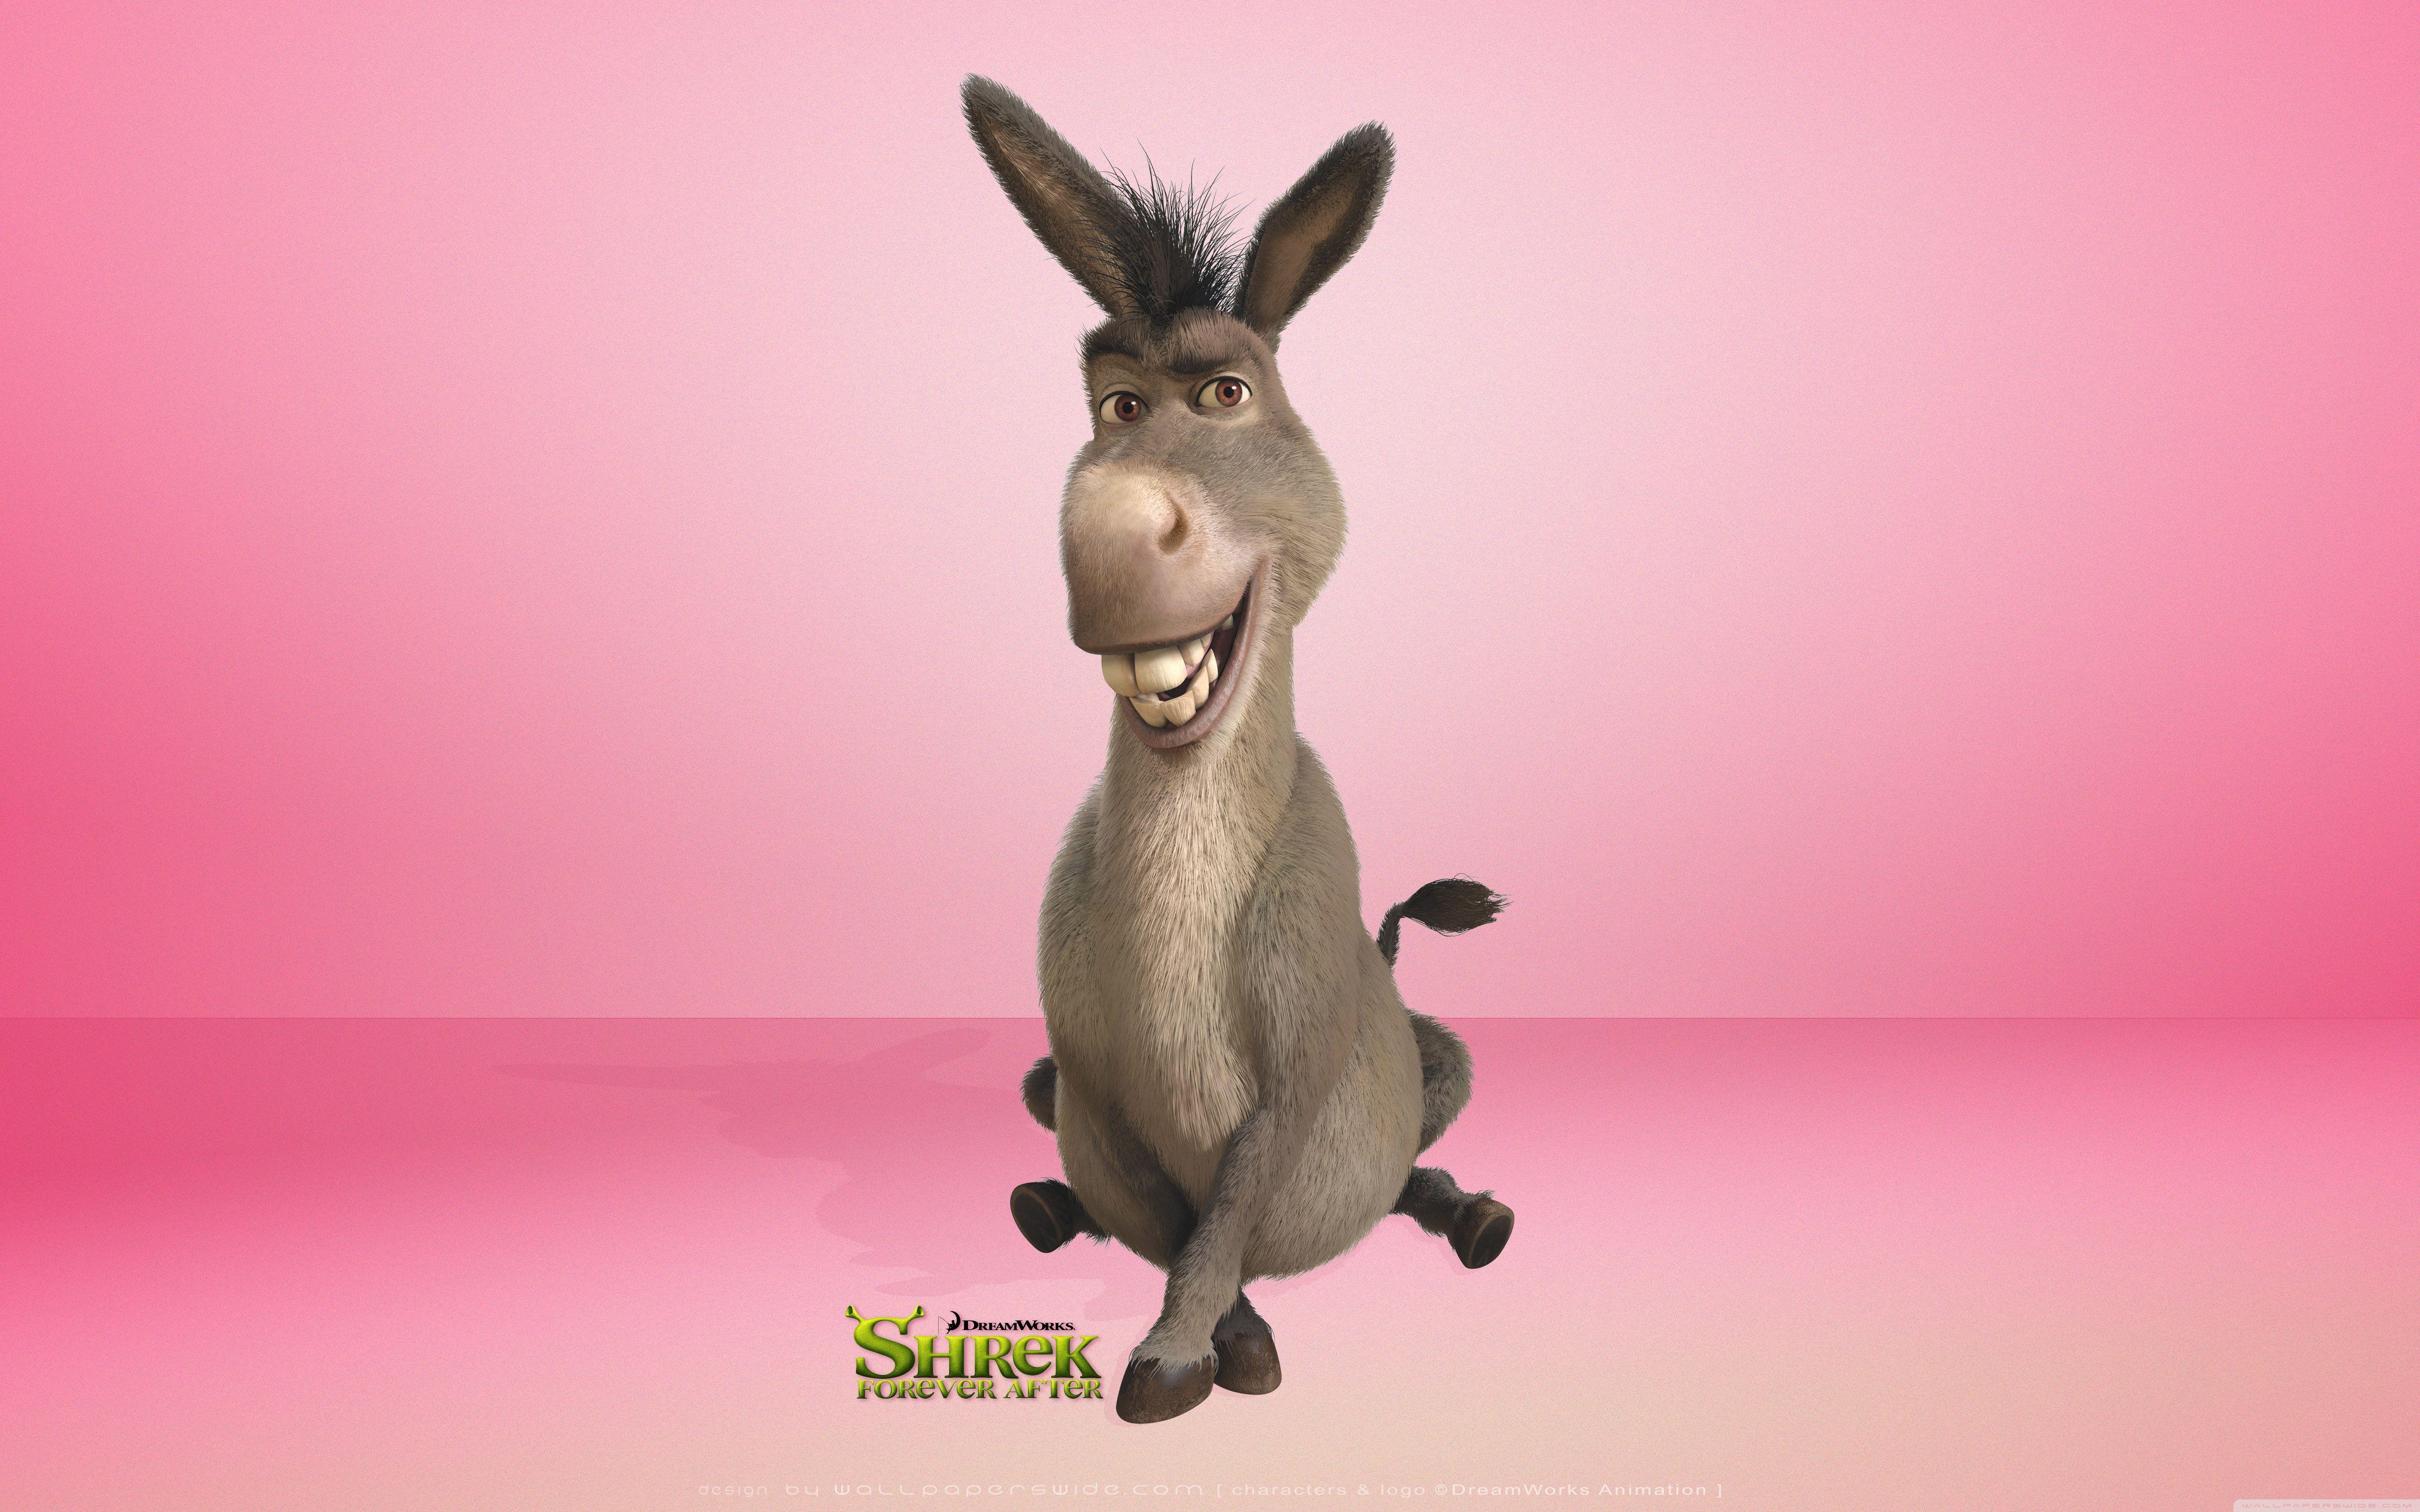 Donkey, Shrek Forever After Ultra HD Desktop Background Wallpaper